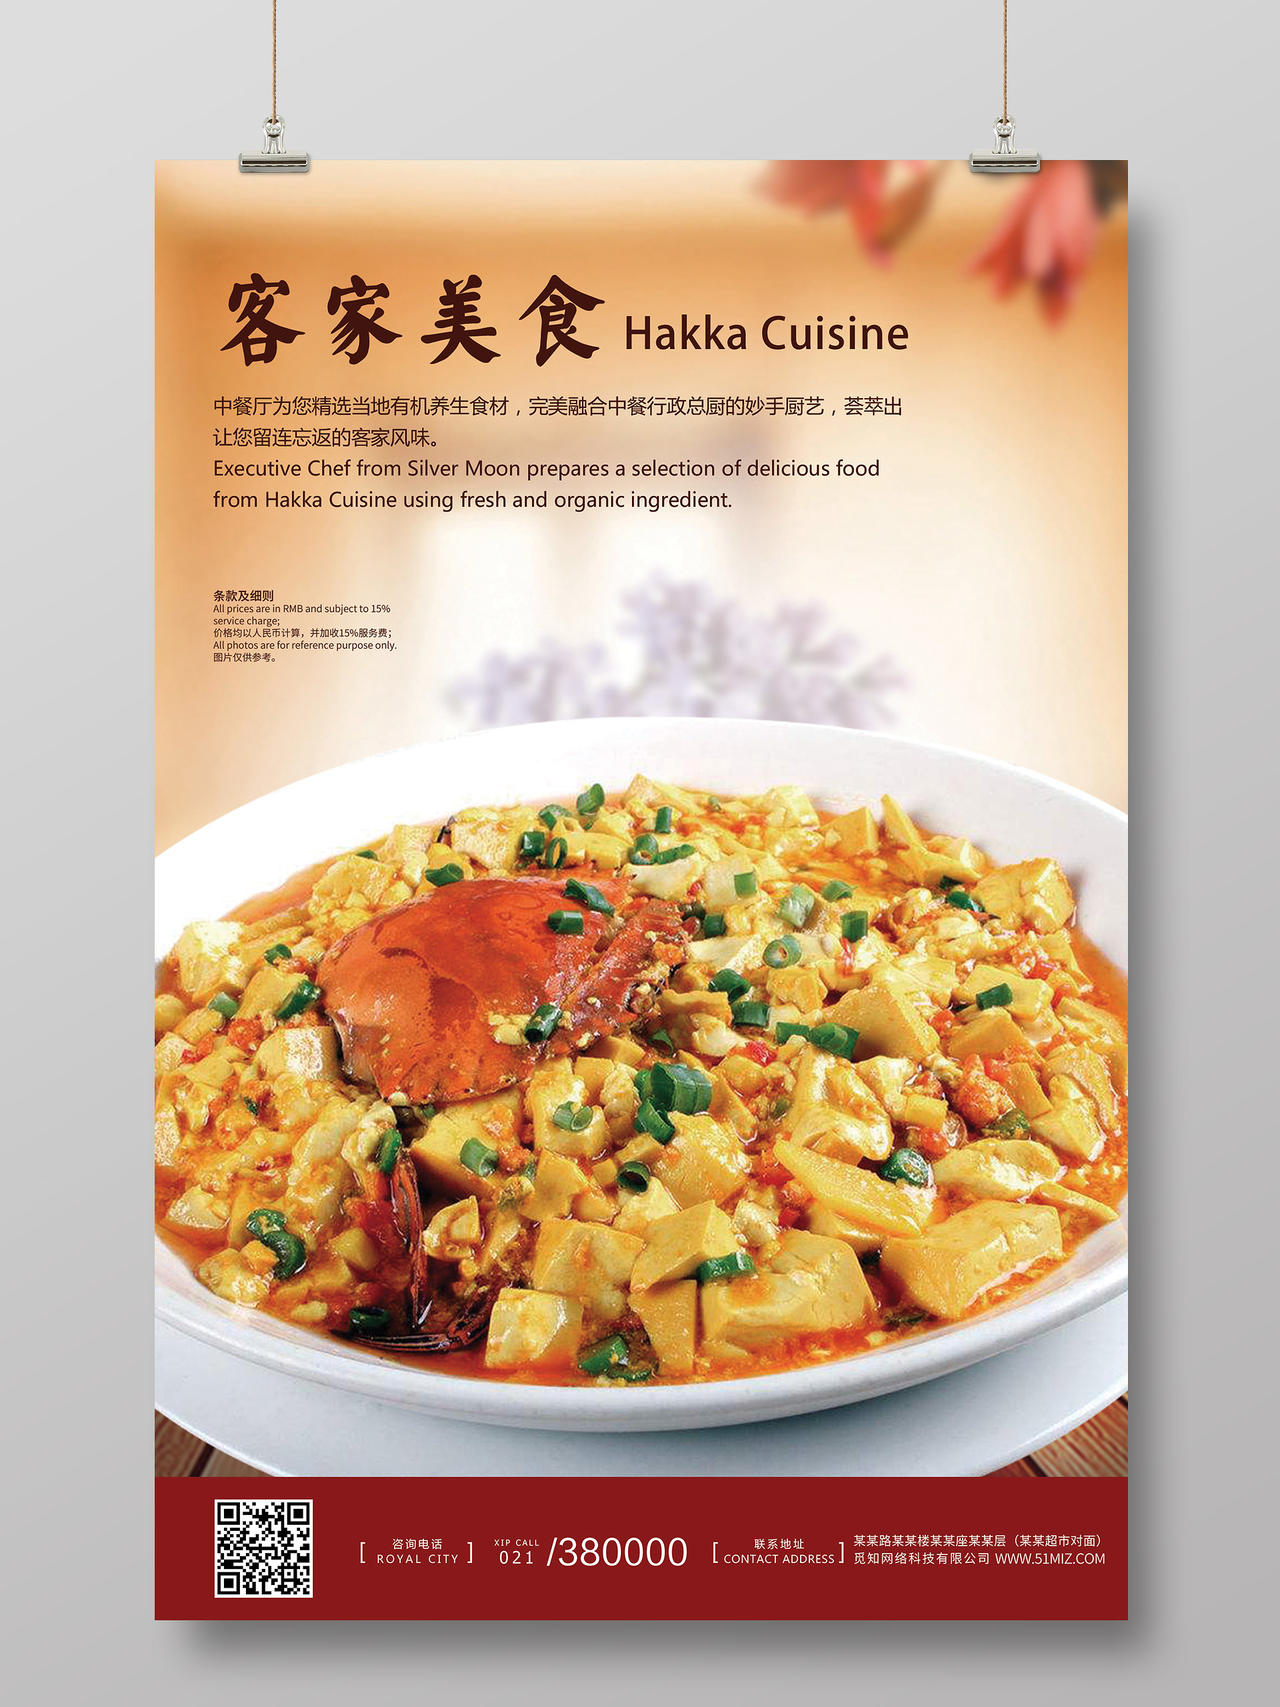 简约简单有食欲客家豆腐广东菜美食海报宣传客家美食